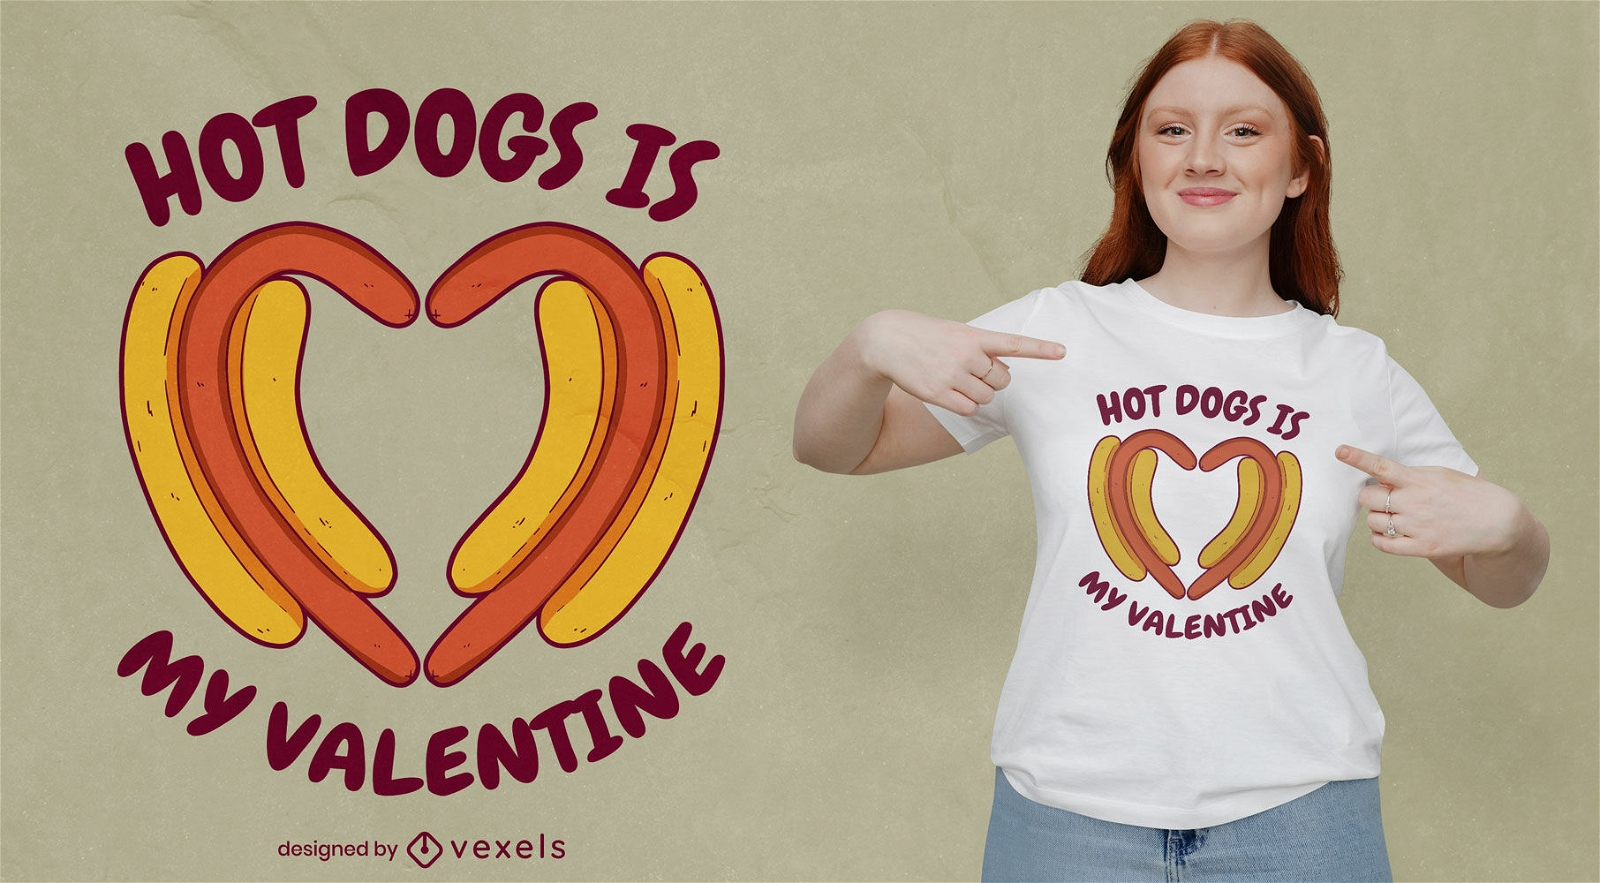 Hot Dogs ist mein Valentins-T-Shirt-Design